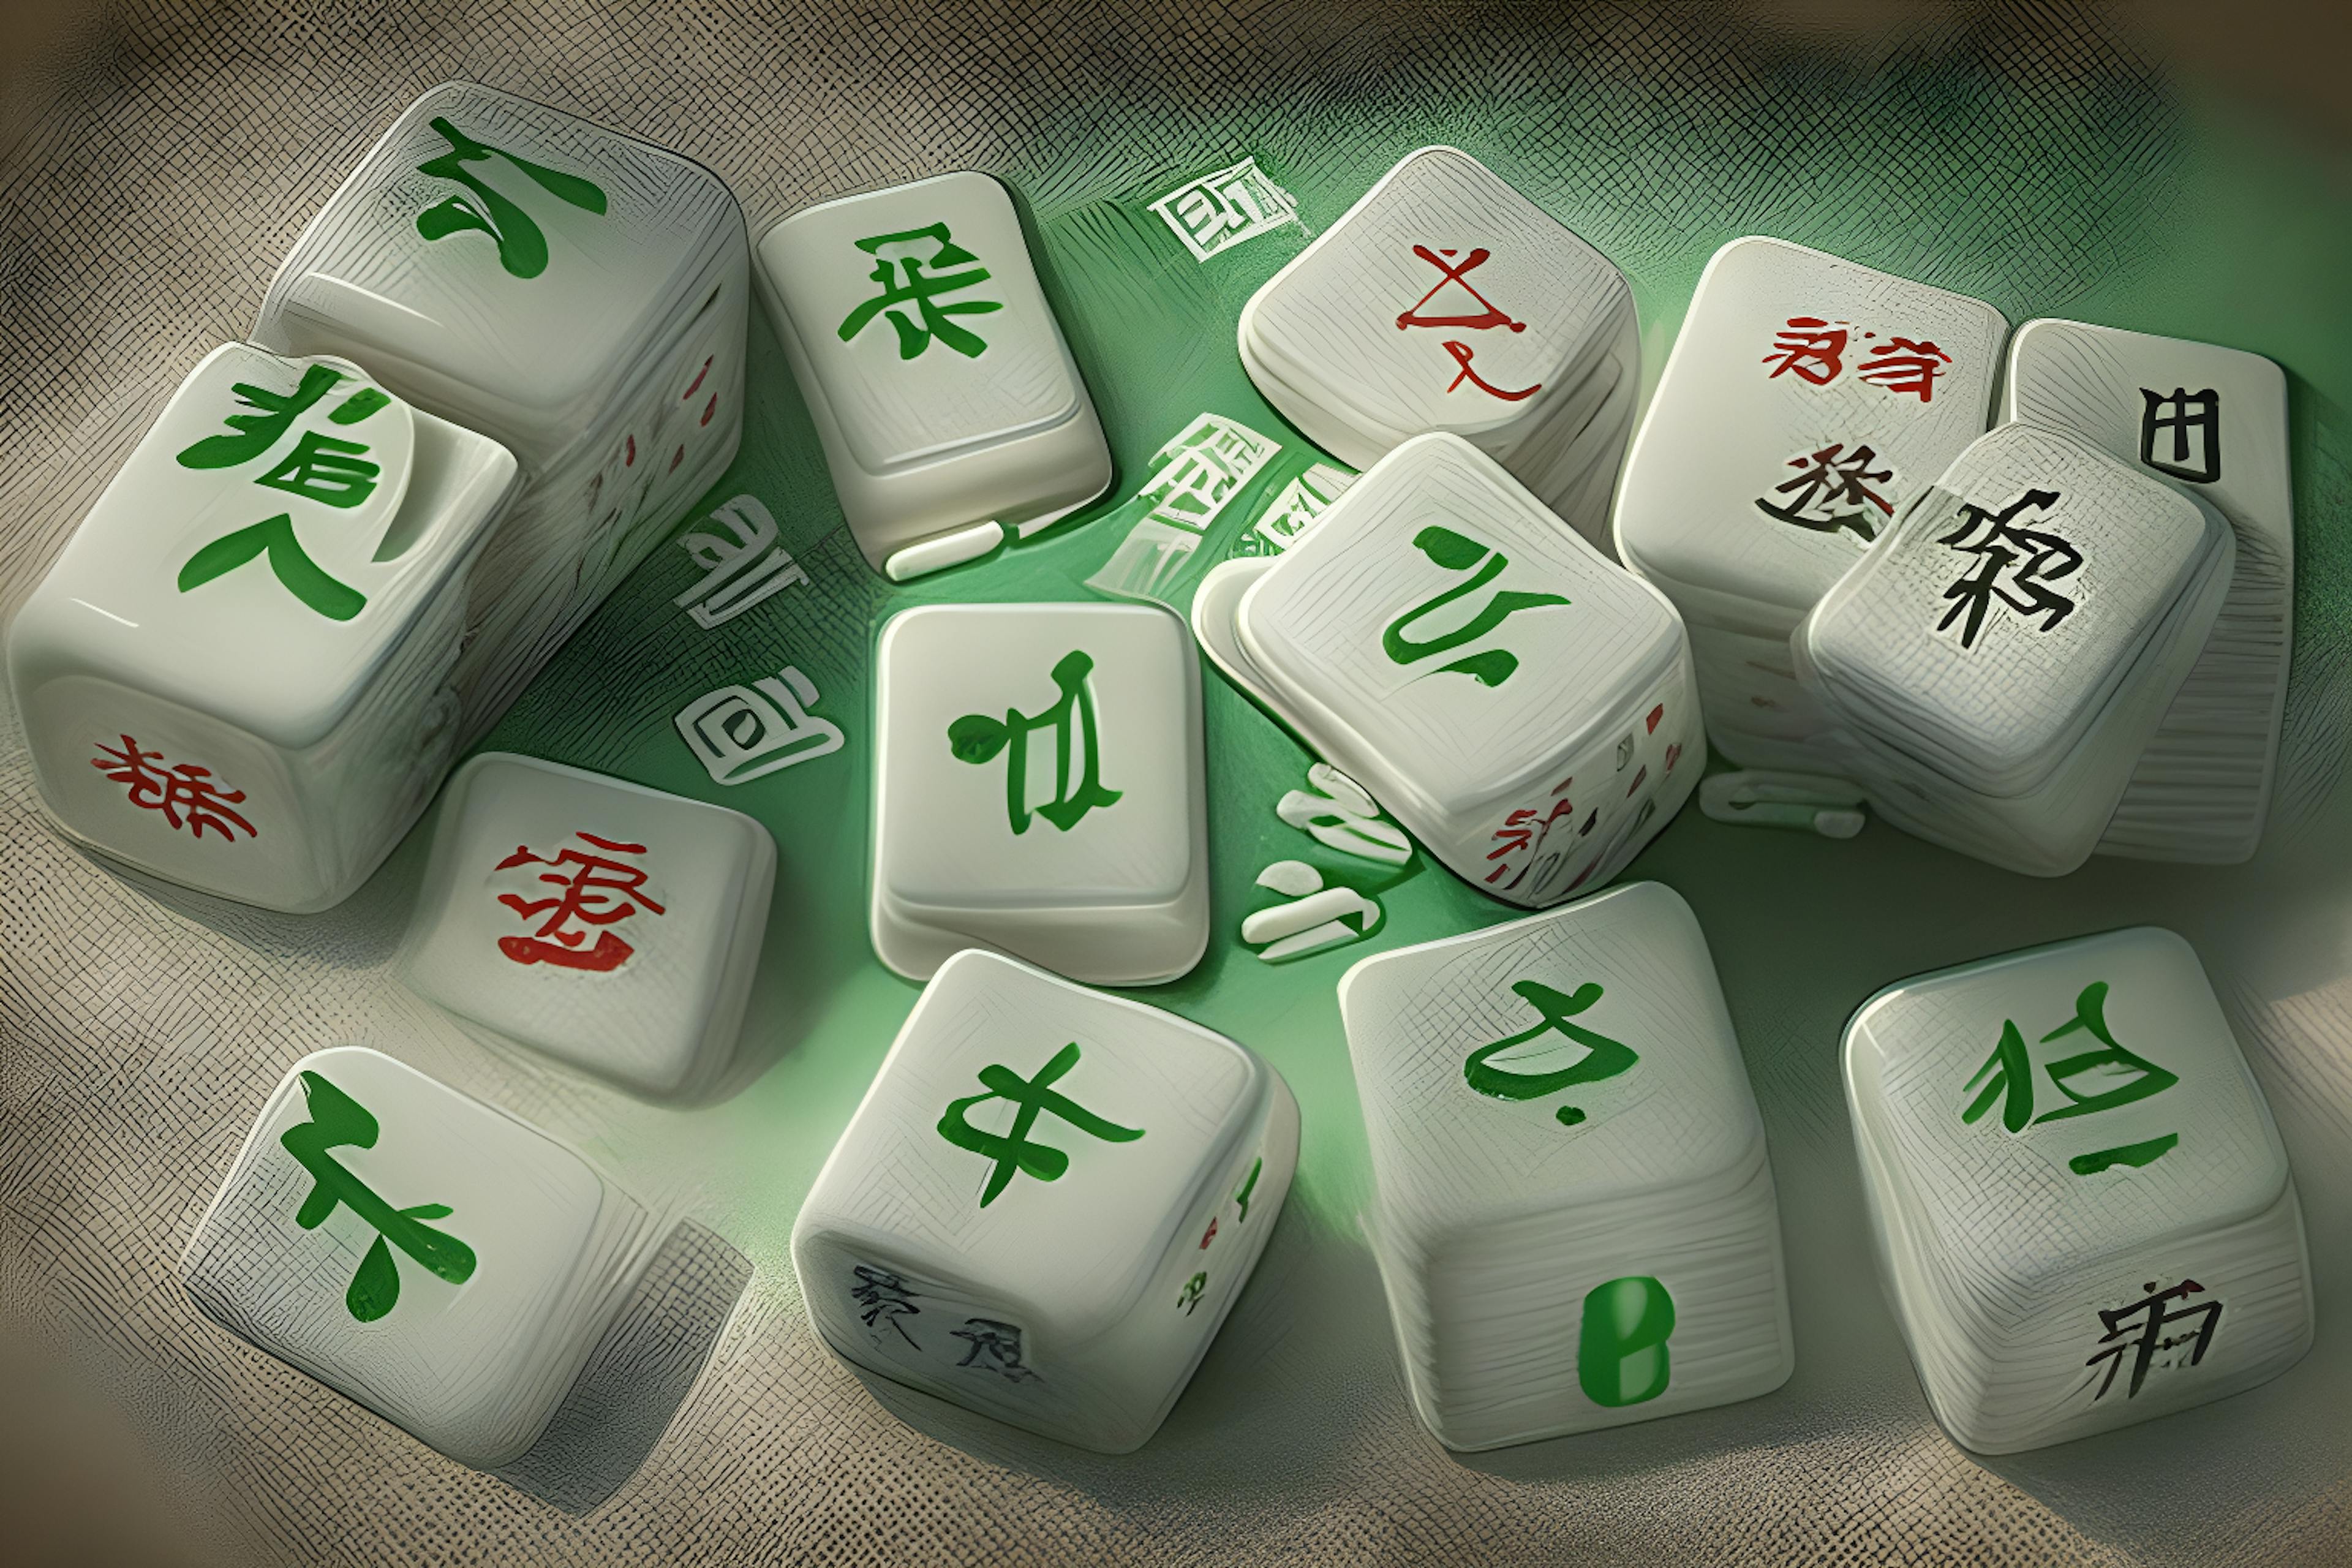 featured image - 0xMahjong NFT va commencer la frappe gratuite - Mahjong Meta Game attend plus de 10 millions de dollars de financement